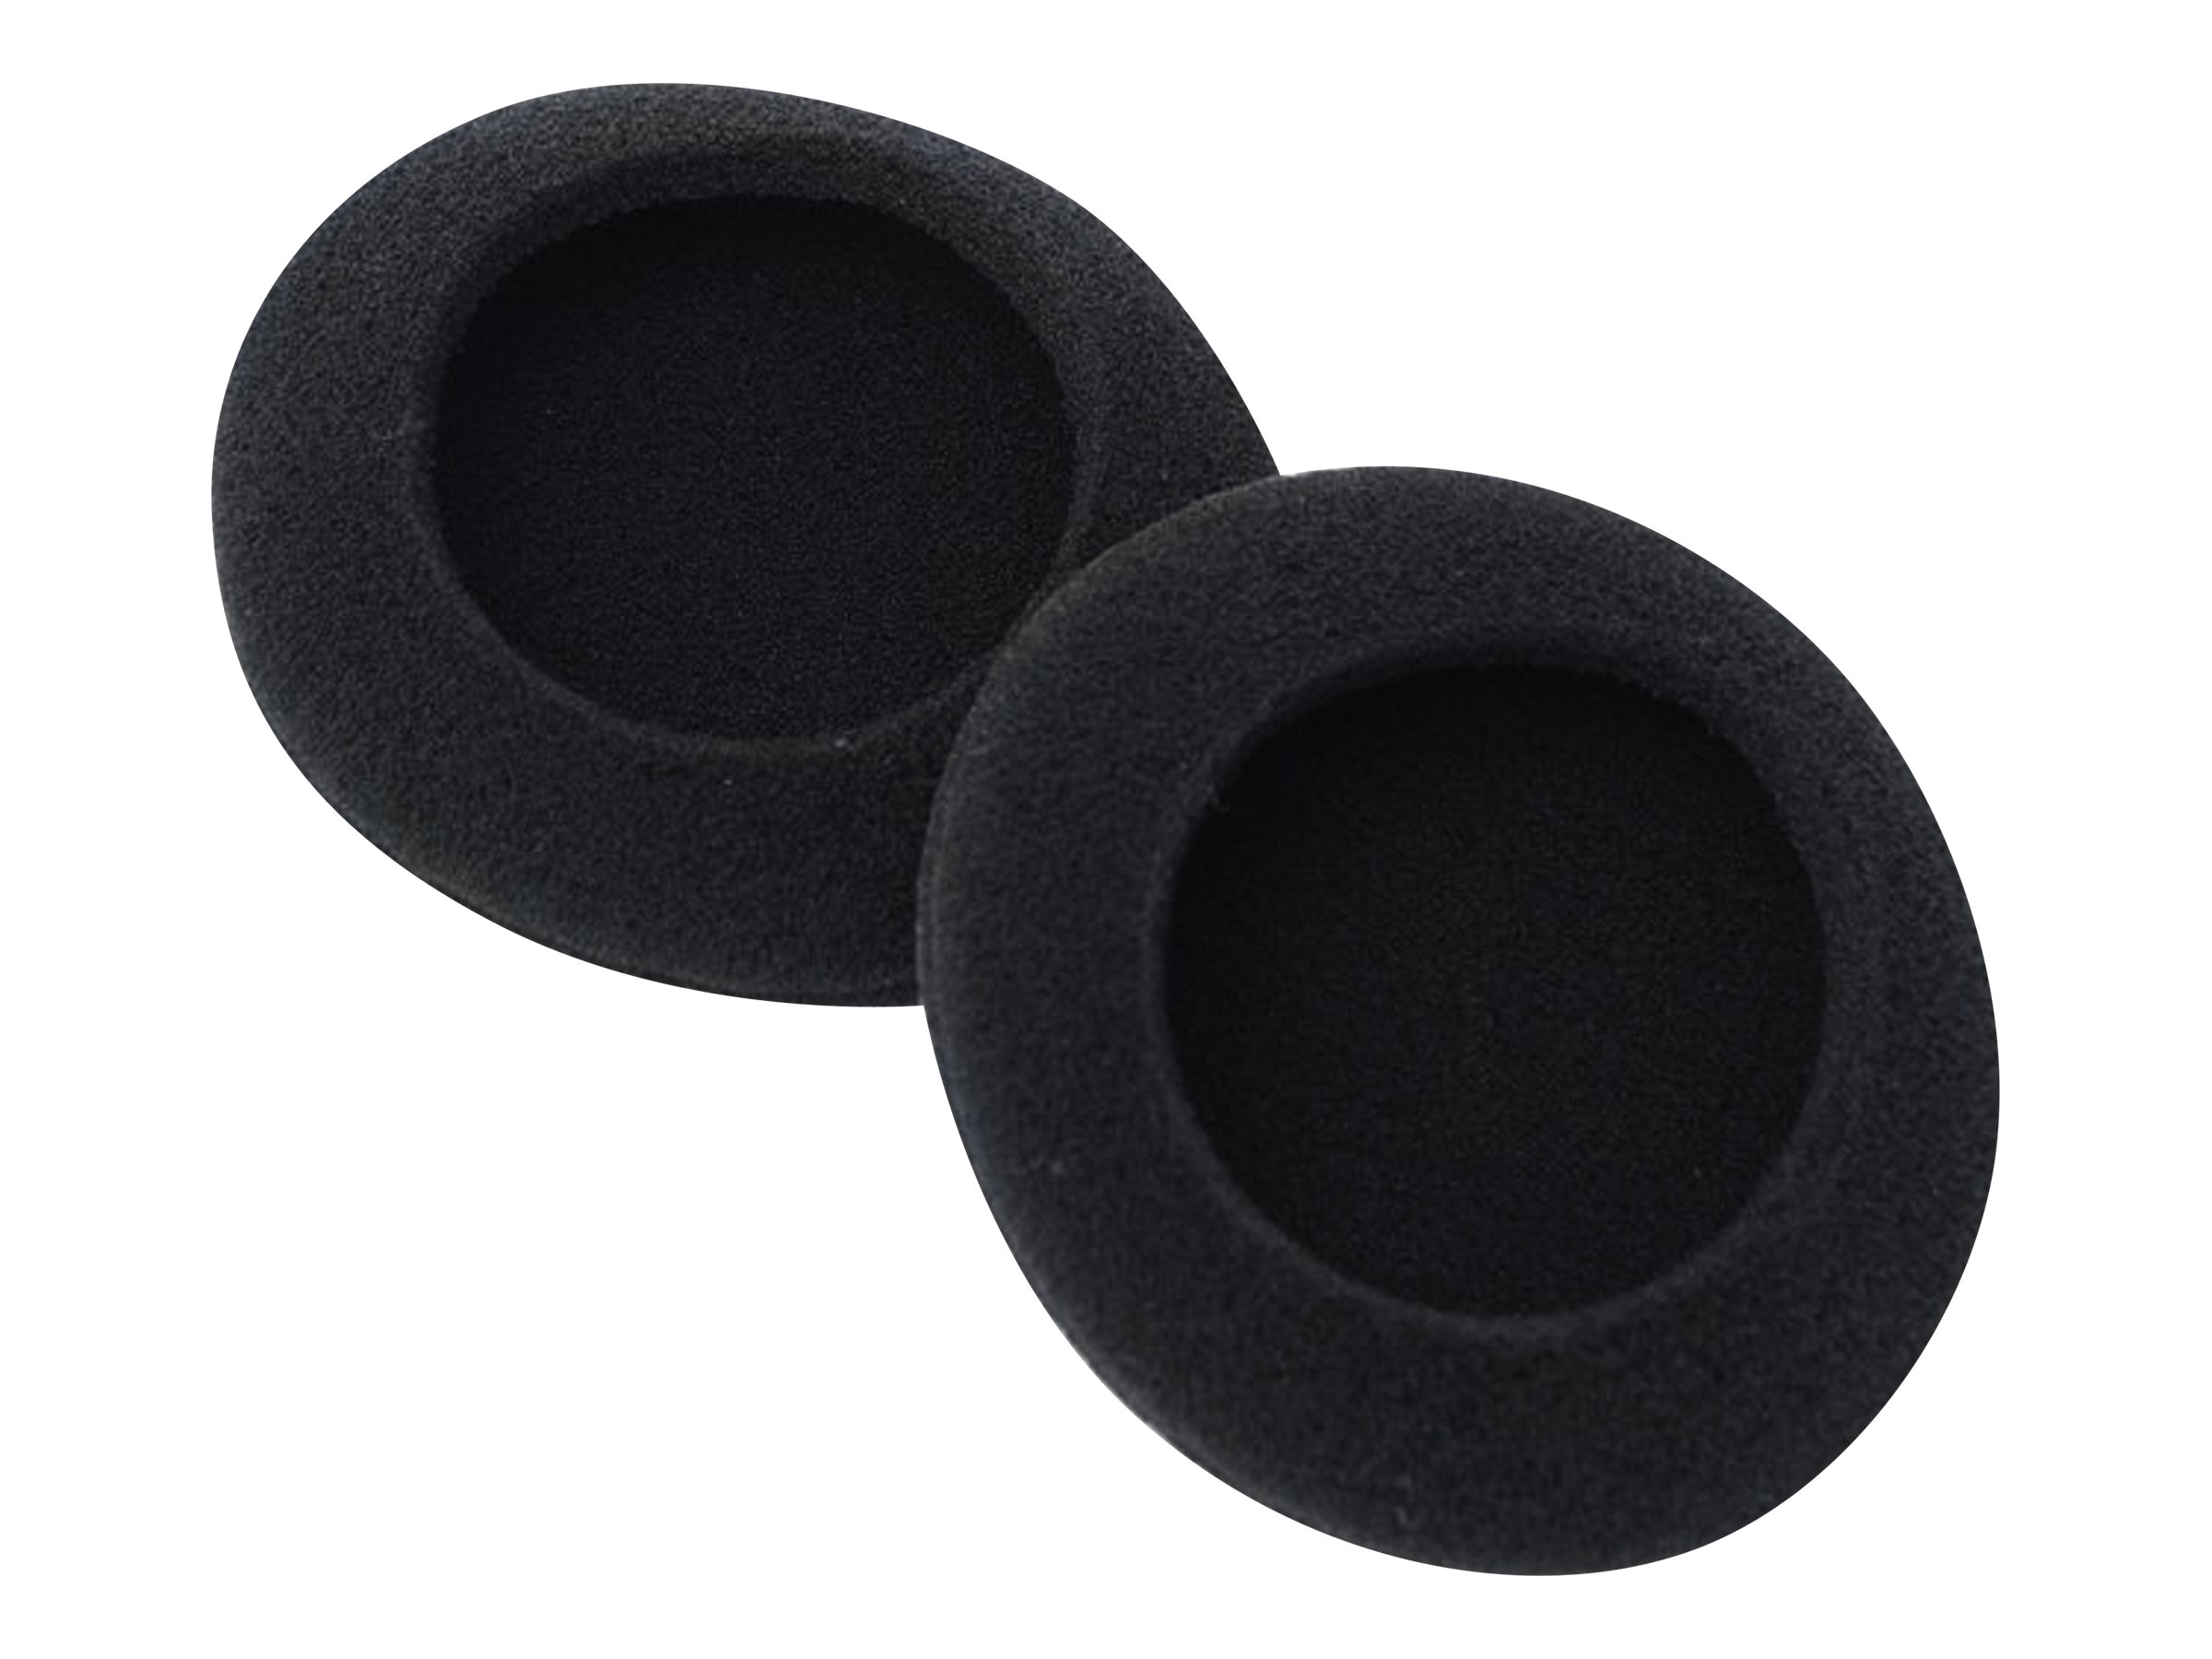 EPOS - Protections auditives pour casque - noir (pack de 20) - pour EPOS I SENNHEISER EDU 10 - 1001112 - Accessoires pour écouteurs